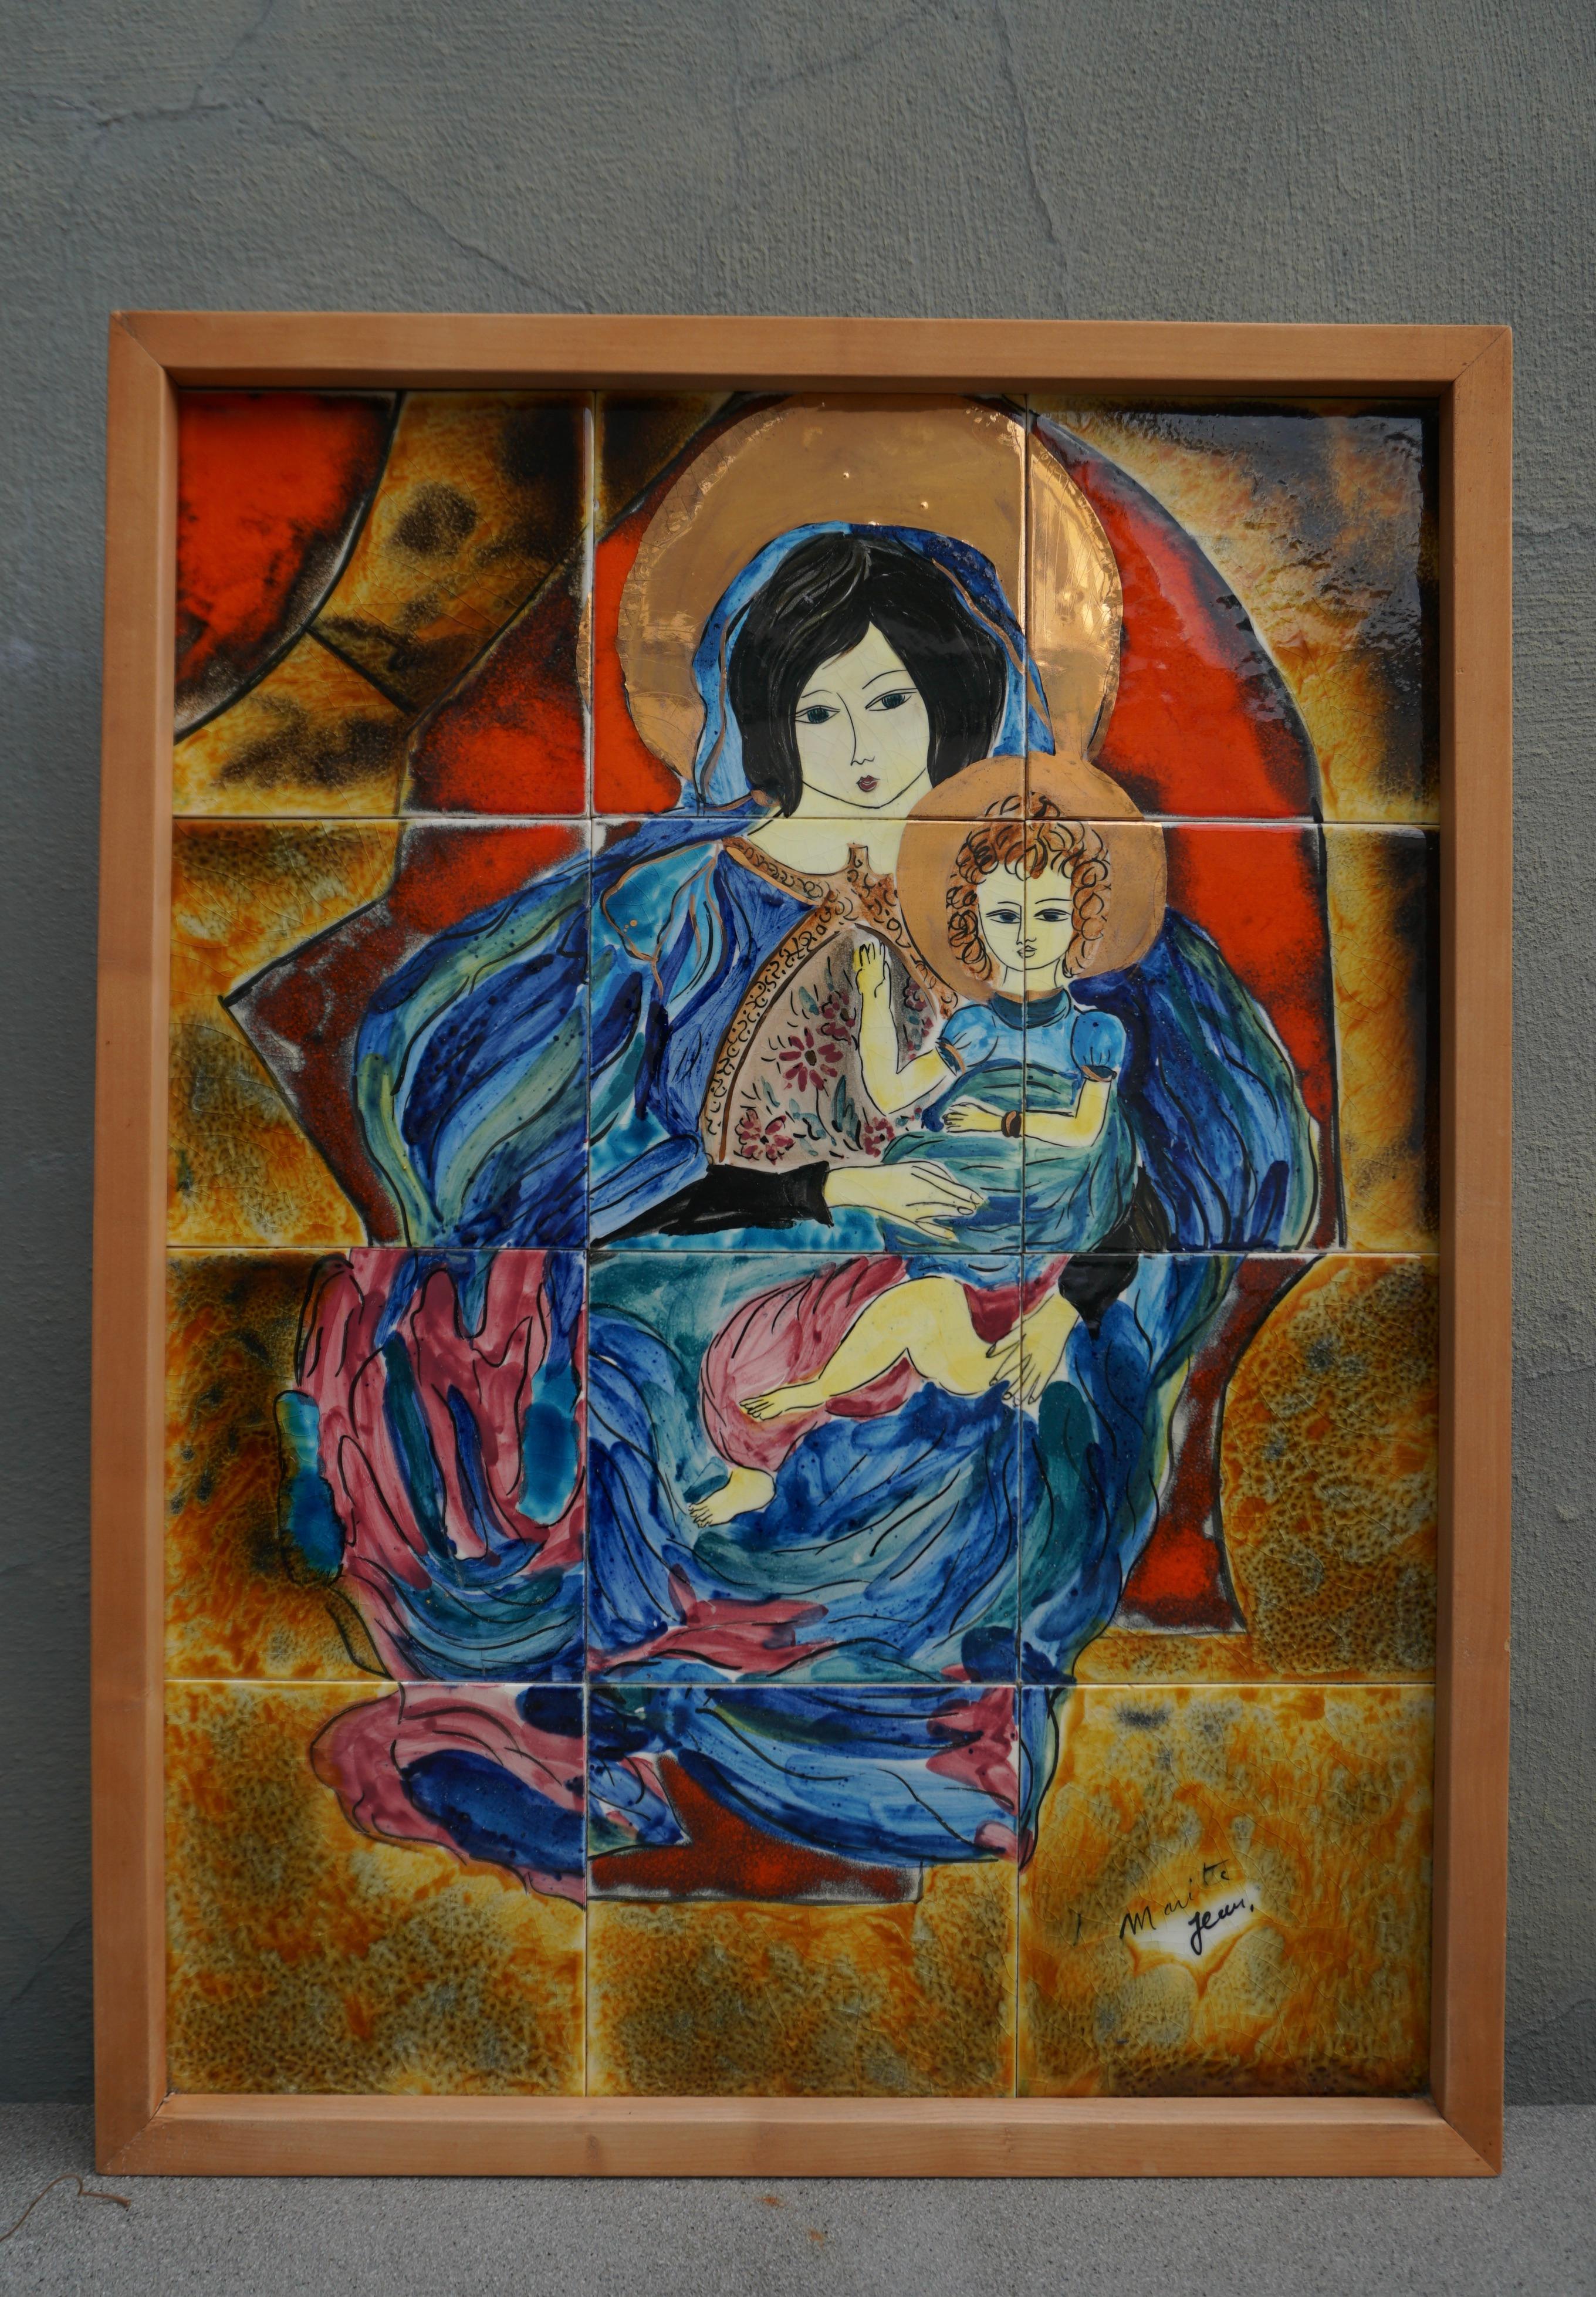 Schöne bunte und zarte Darstellung der Madonna mit Kind in Keramik.
Unterschrift unleserlich.

Breite 19,2